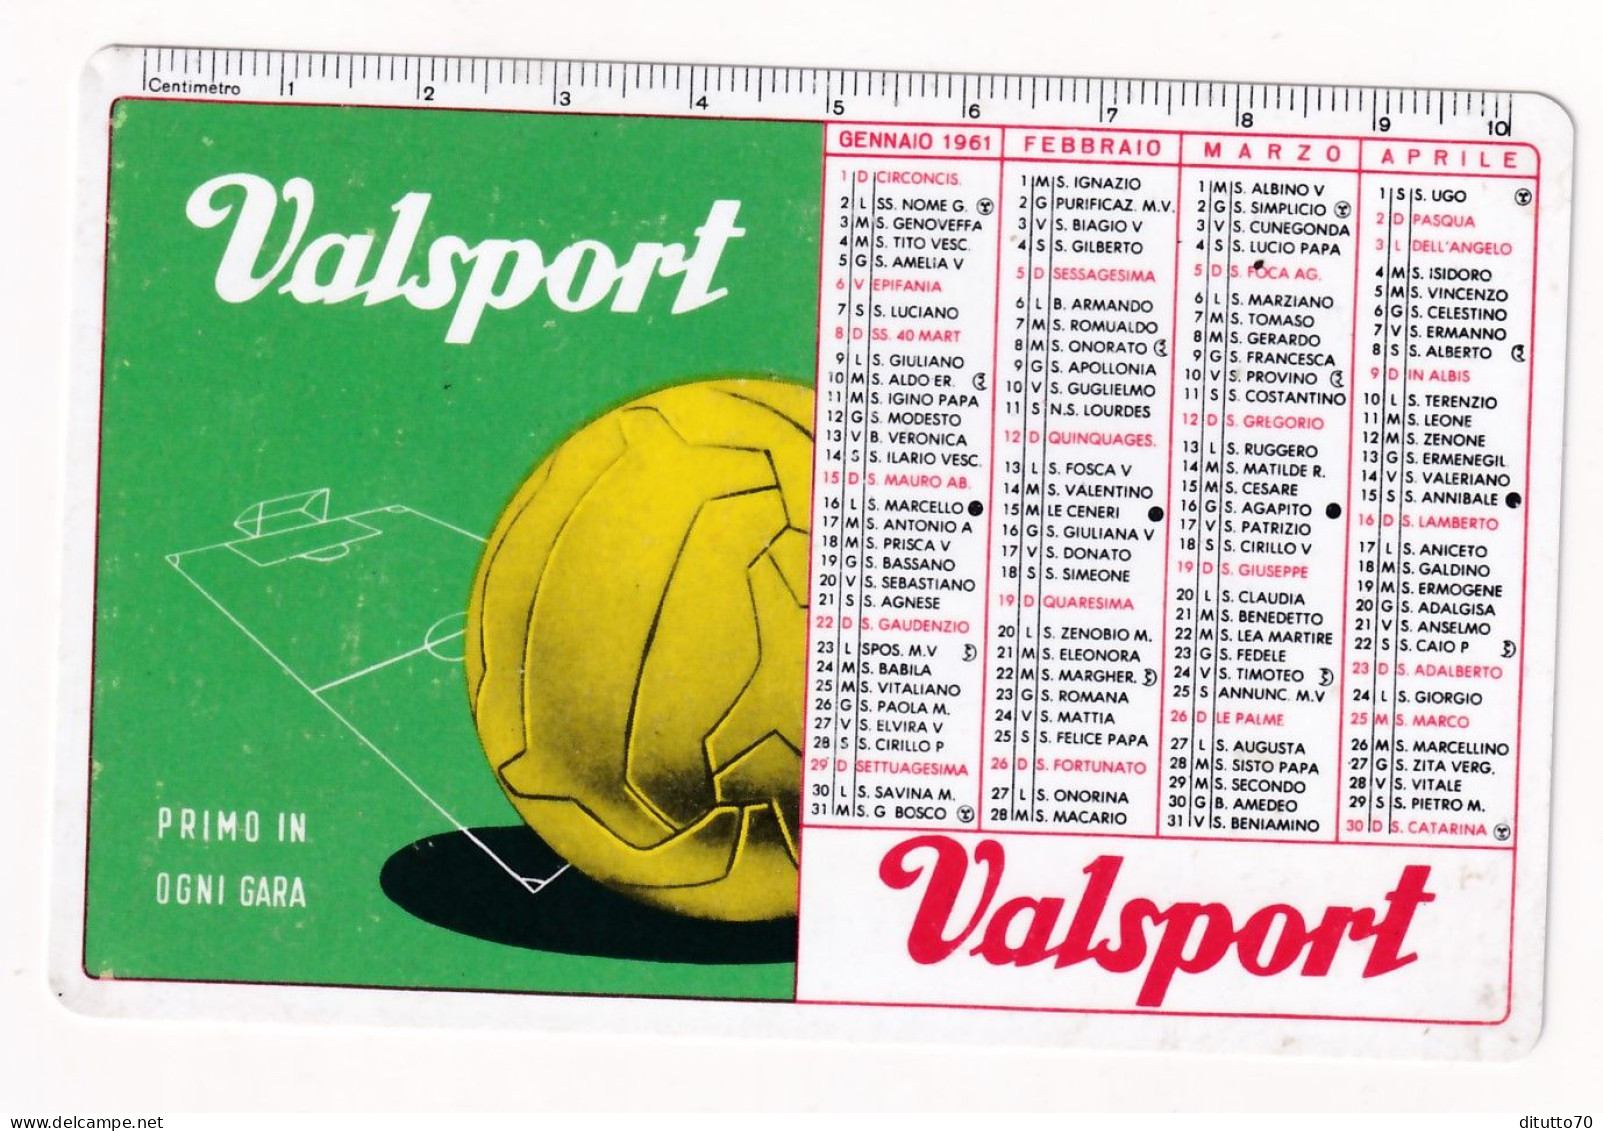 Calendarietto - Valsport - Palloni E Calzature - Anno 1961 - Kleinformat : 1961-70